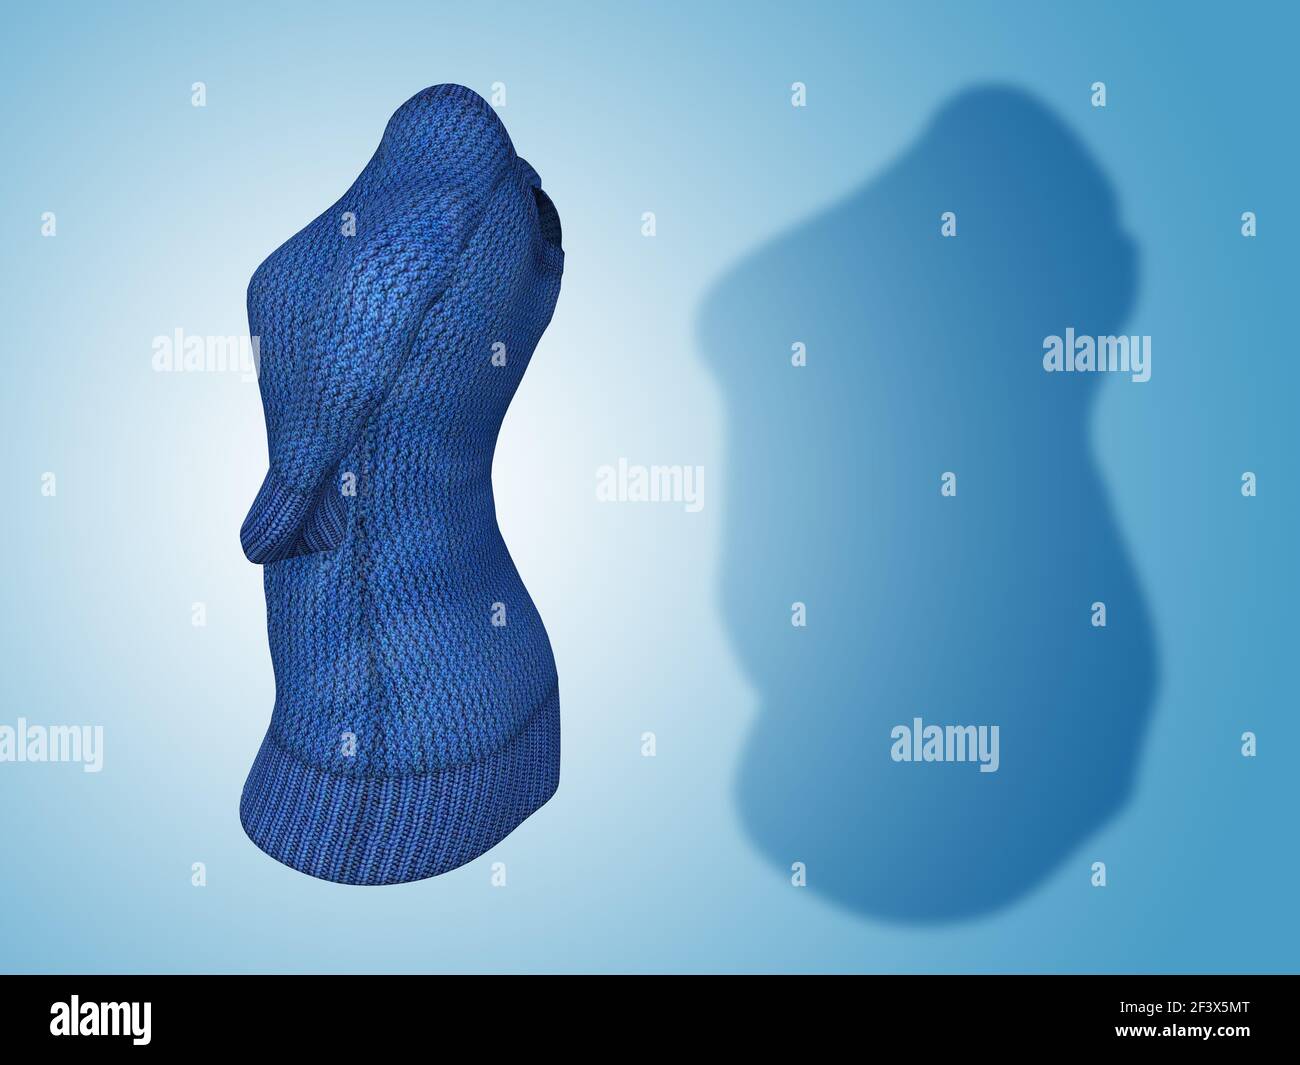 Conceptual Fat Übergewicht fettleibig Schatten weibliche Pullover Kleid vs schlank fit gesunden Körper nach Gewichtsverlust oder Diät dünne junge Frau auf blau. Stockfoto